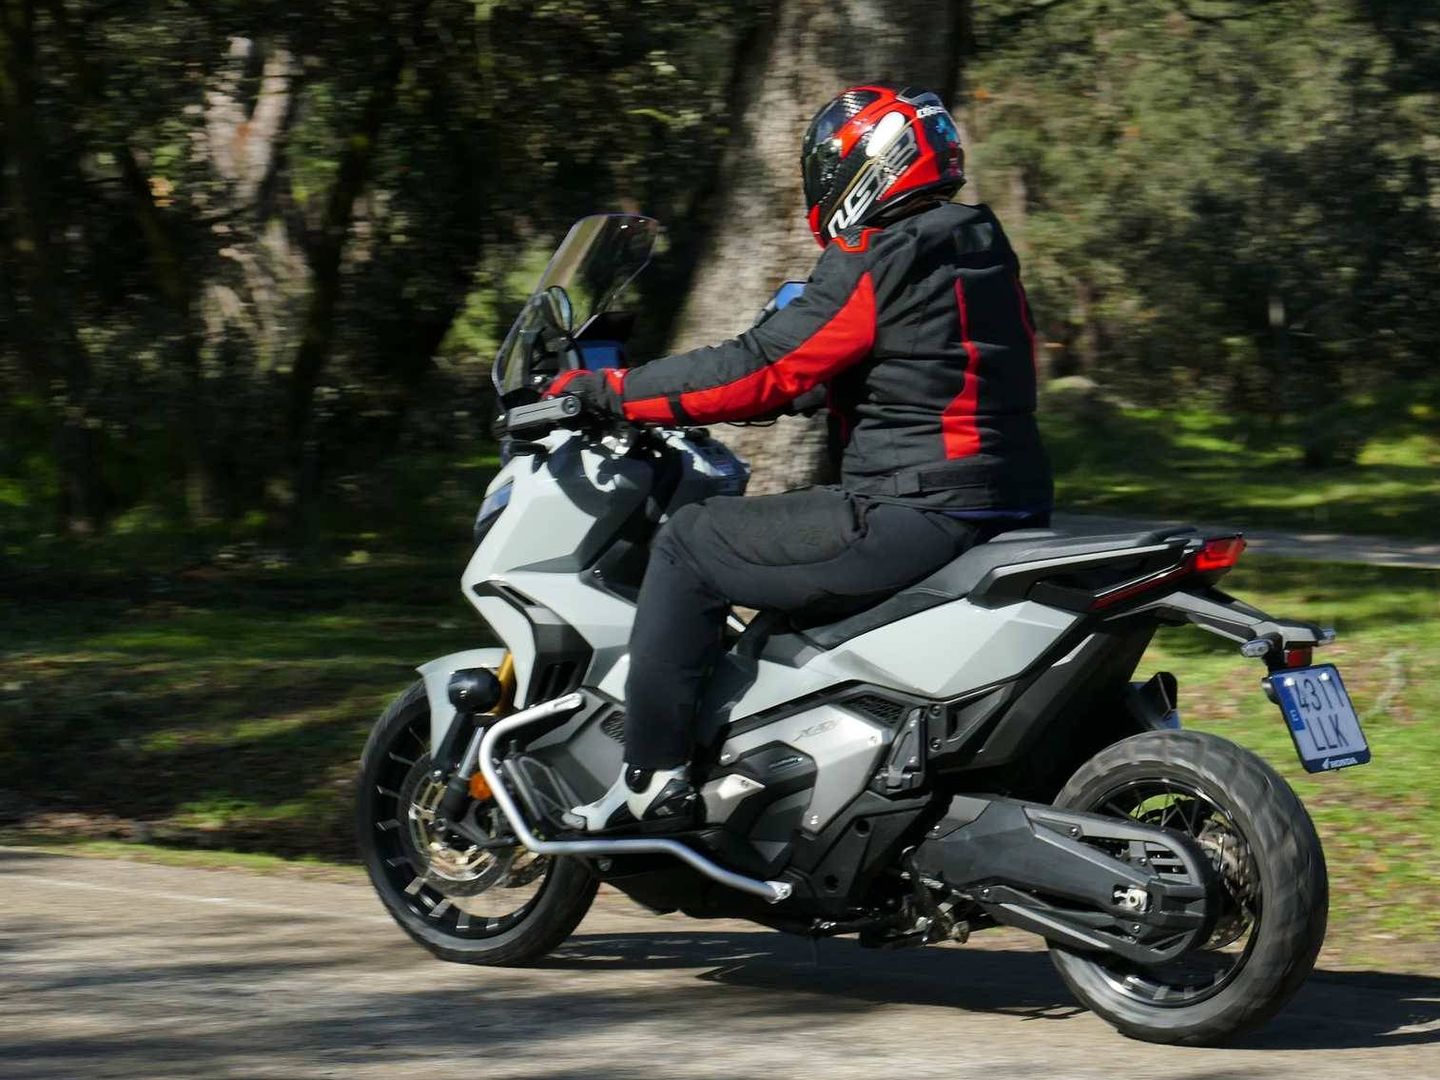 La X-ADV es una moto confortable y capaz, lista para todo.